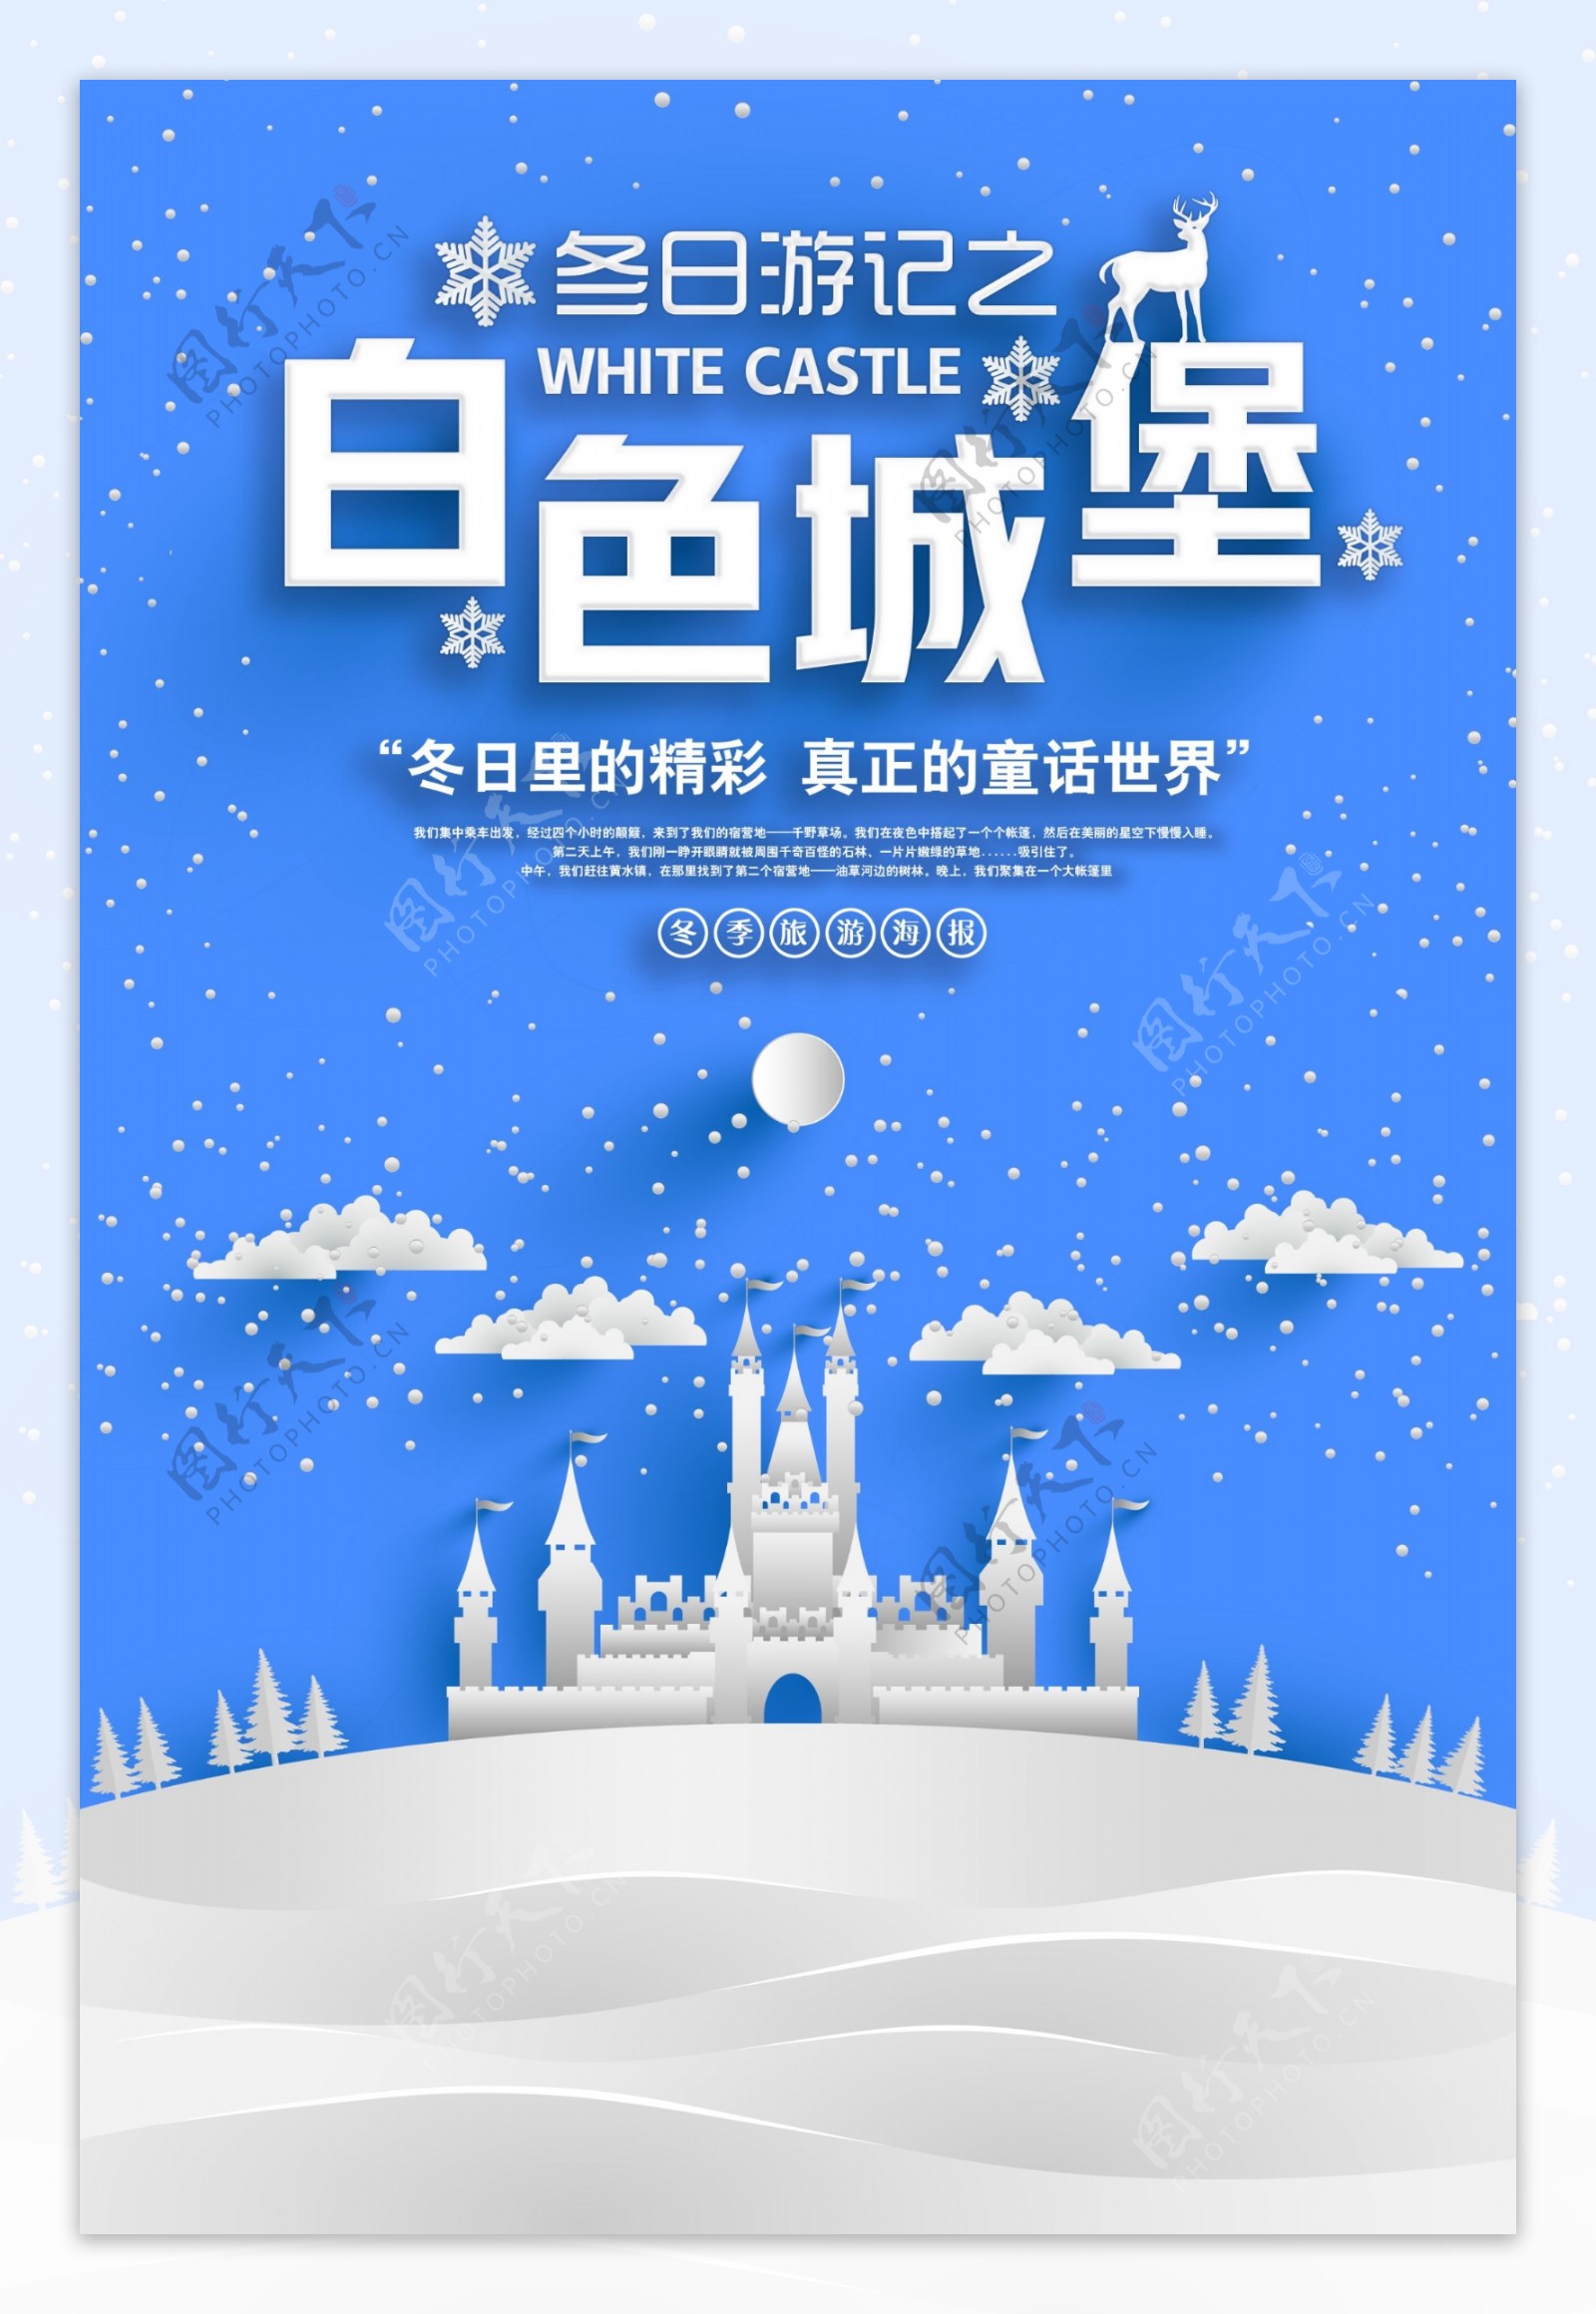 简约风格白色城堡冬季旅游海报